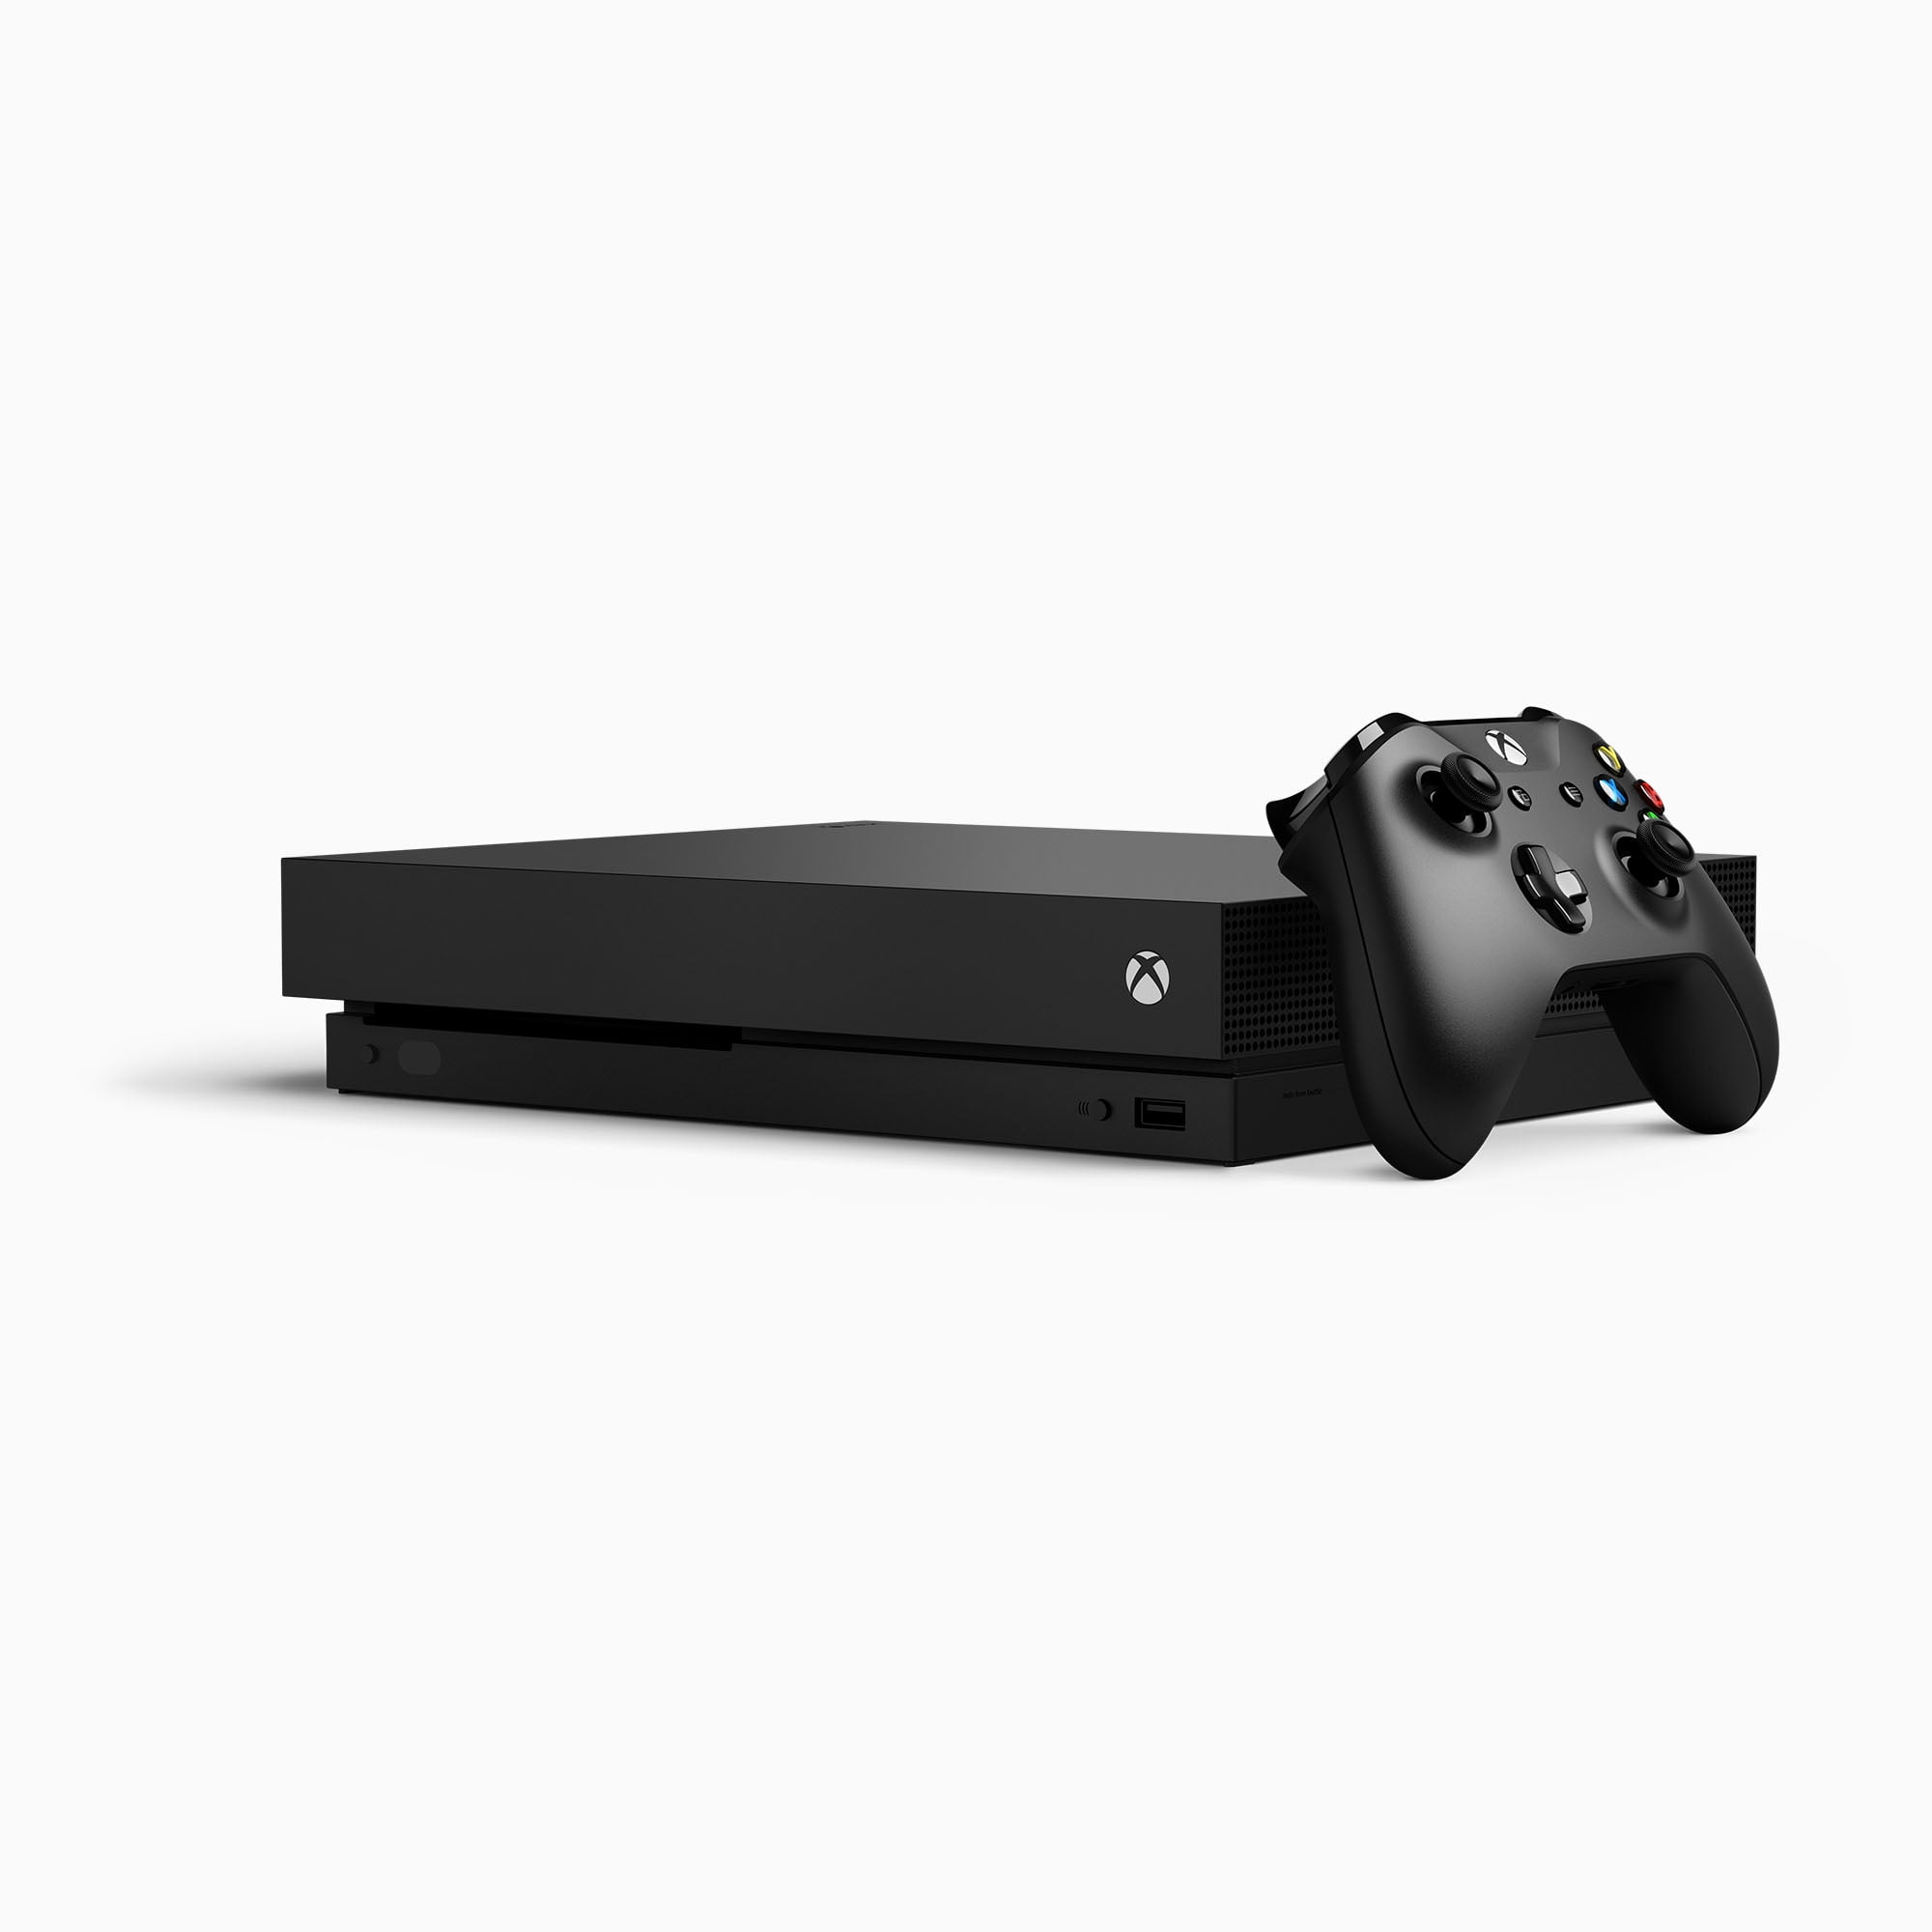 Microsoft Xbox One 1TB Console, Black, CYV-00001 - Walmart.com